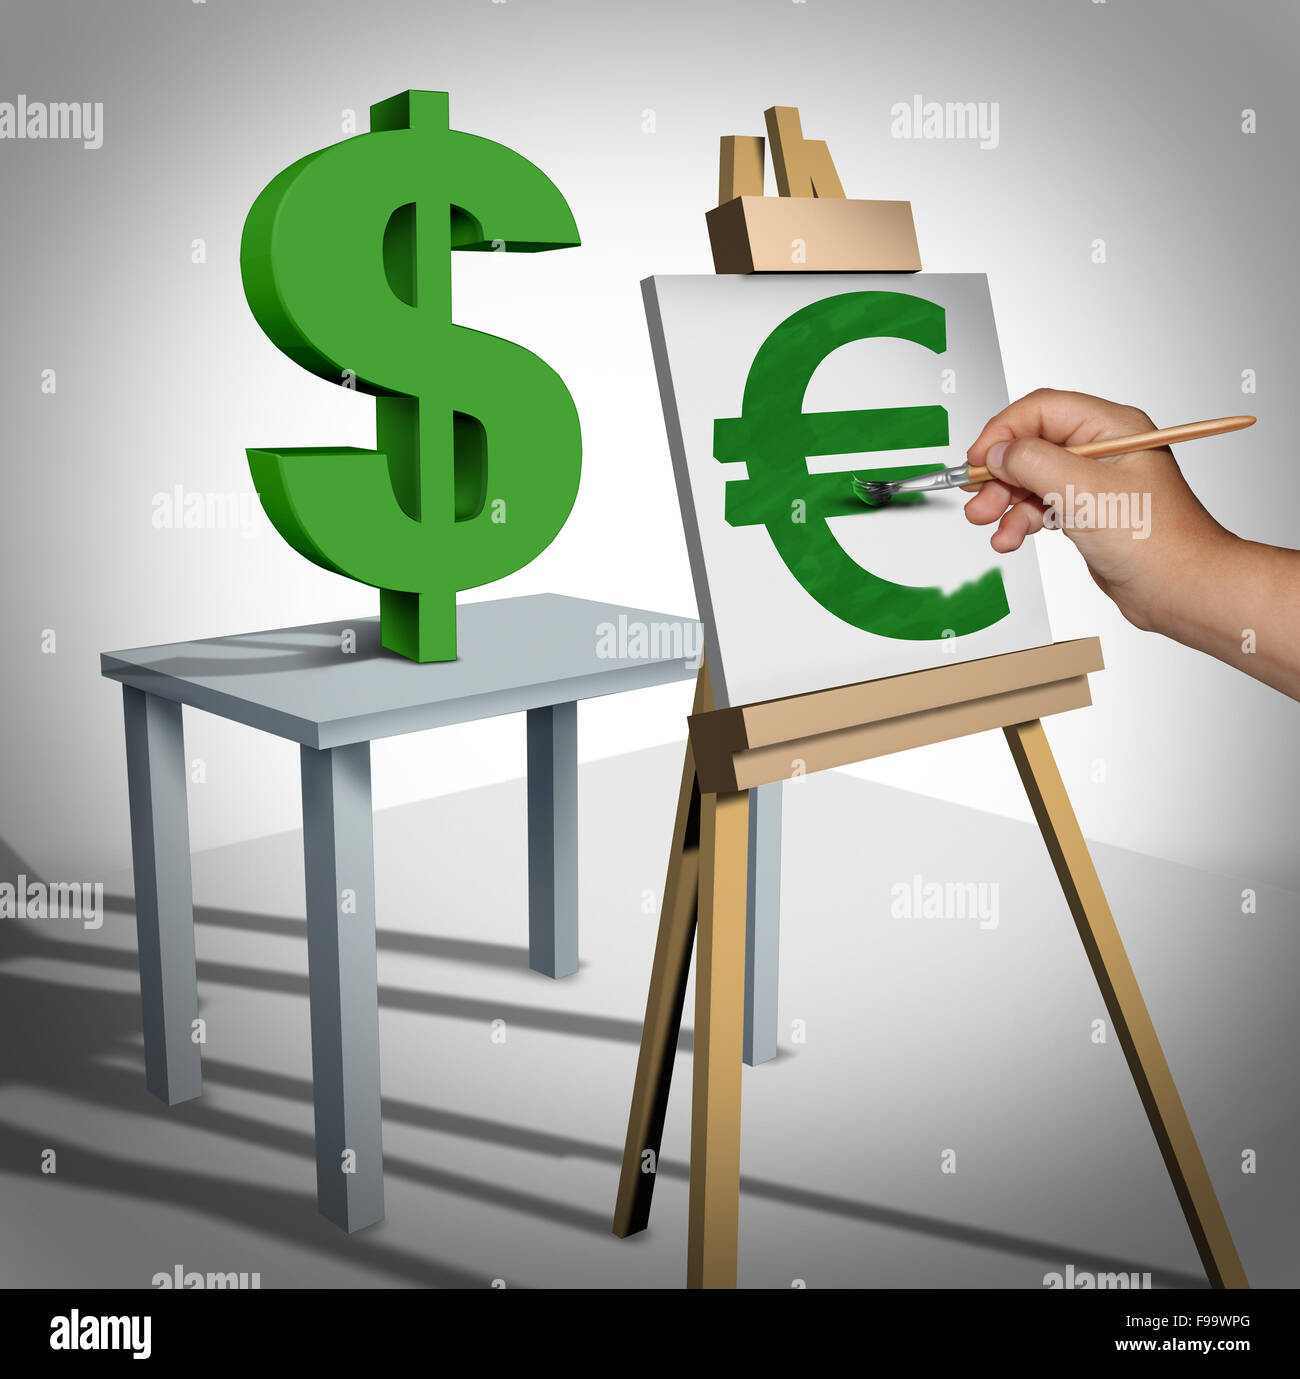 La conversione di valuta e lo scambio di denaro business finanziario  nozione come un tridimensionale dollar sign essendo dipinta su una tela  come un euro Valore nominale icona e un simbolo delle